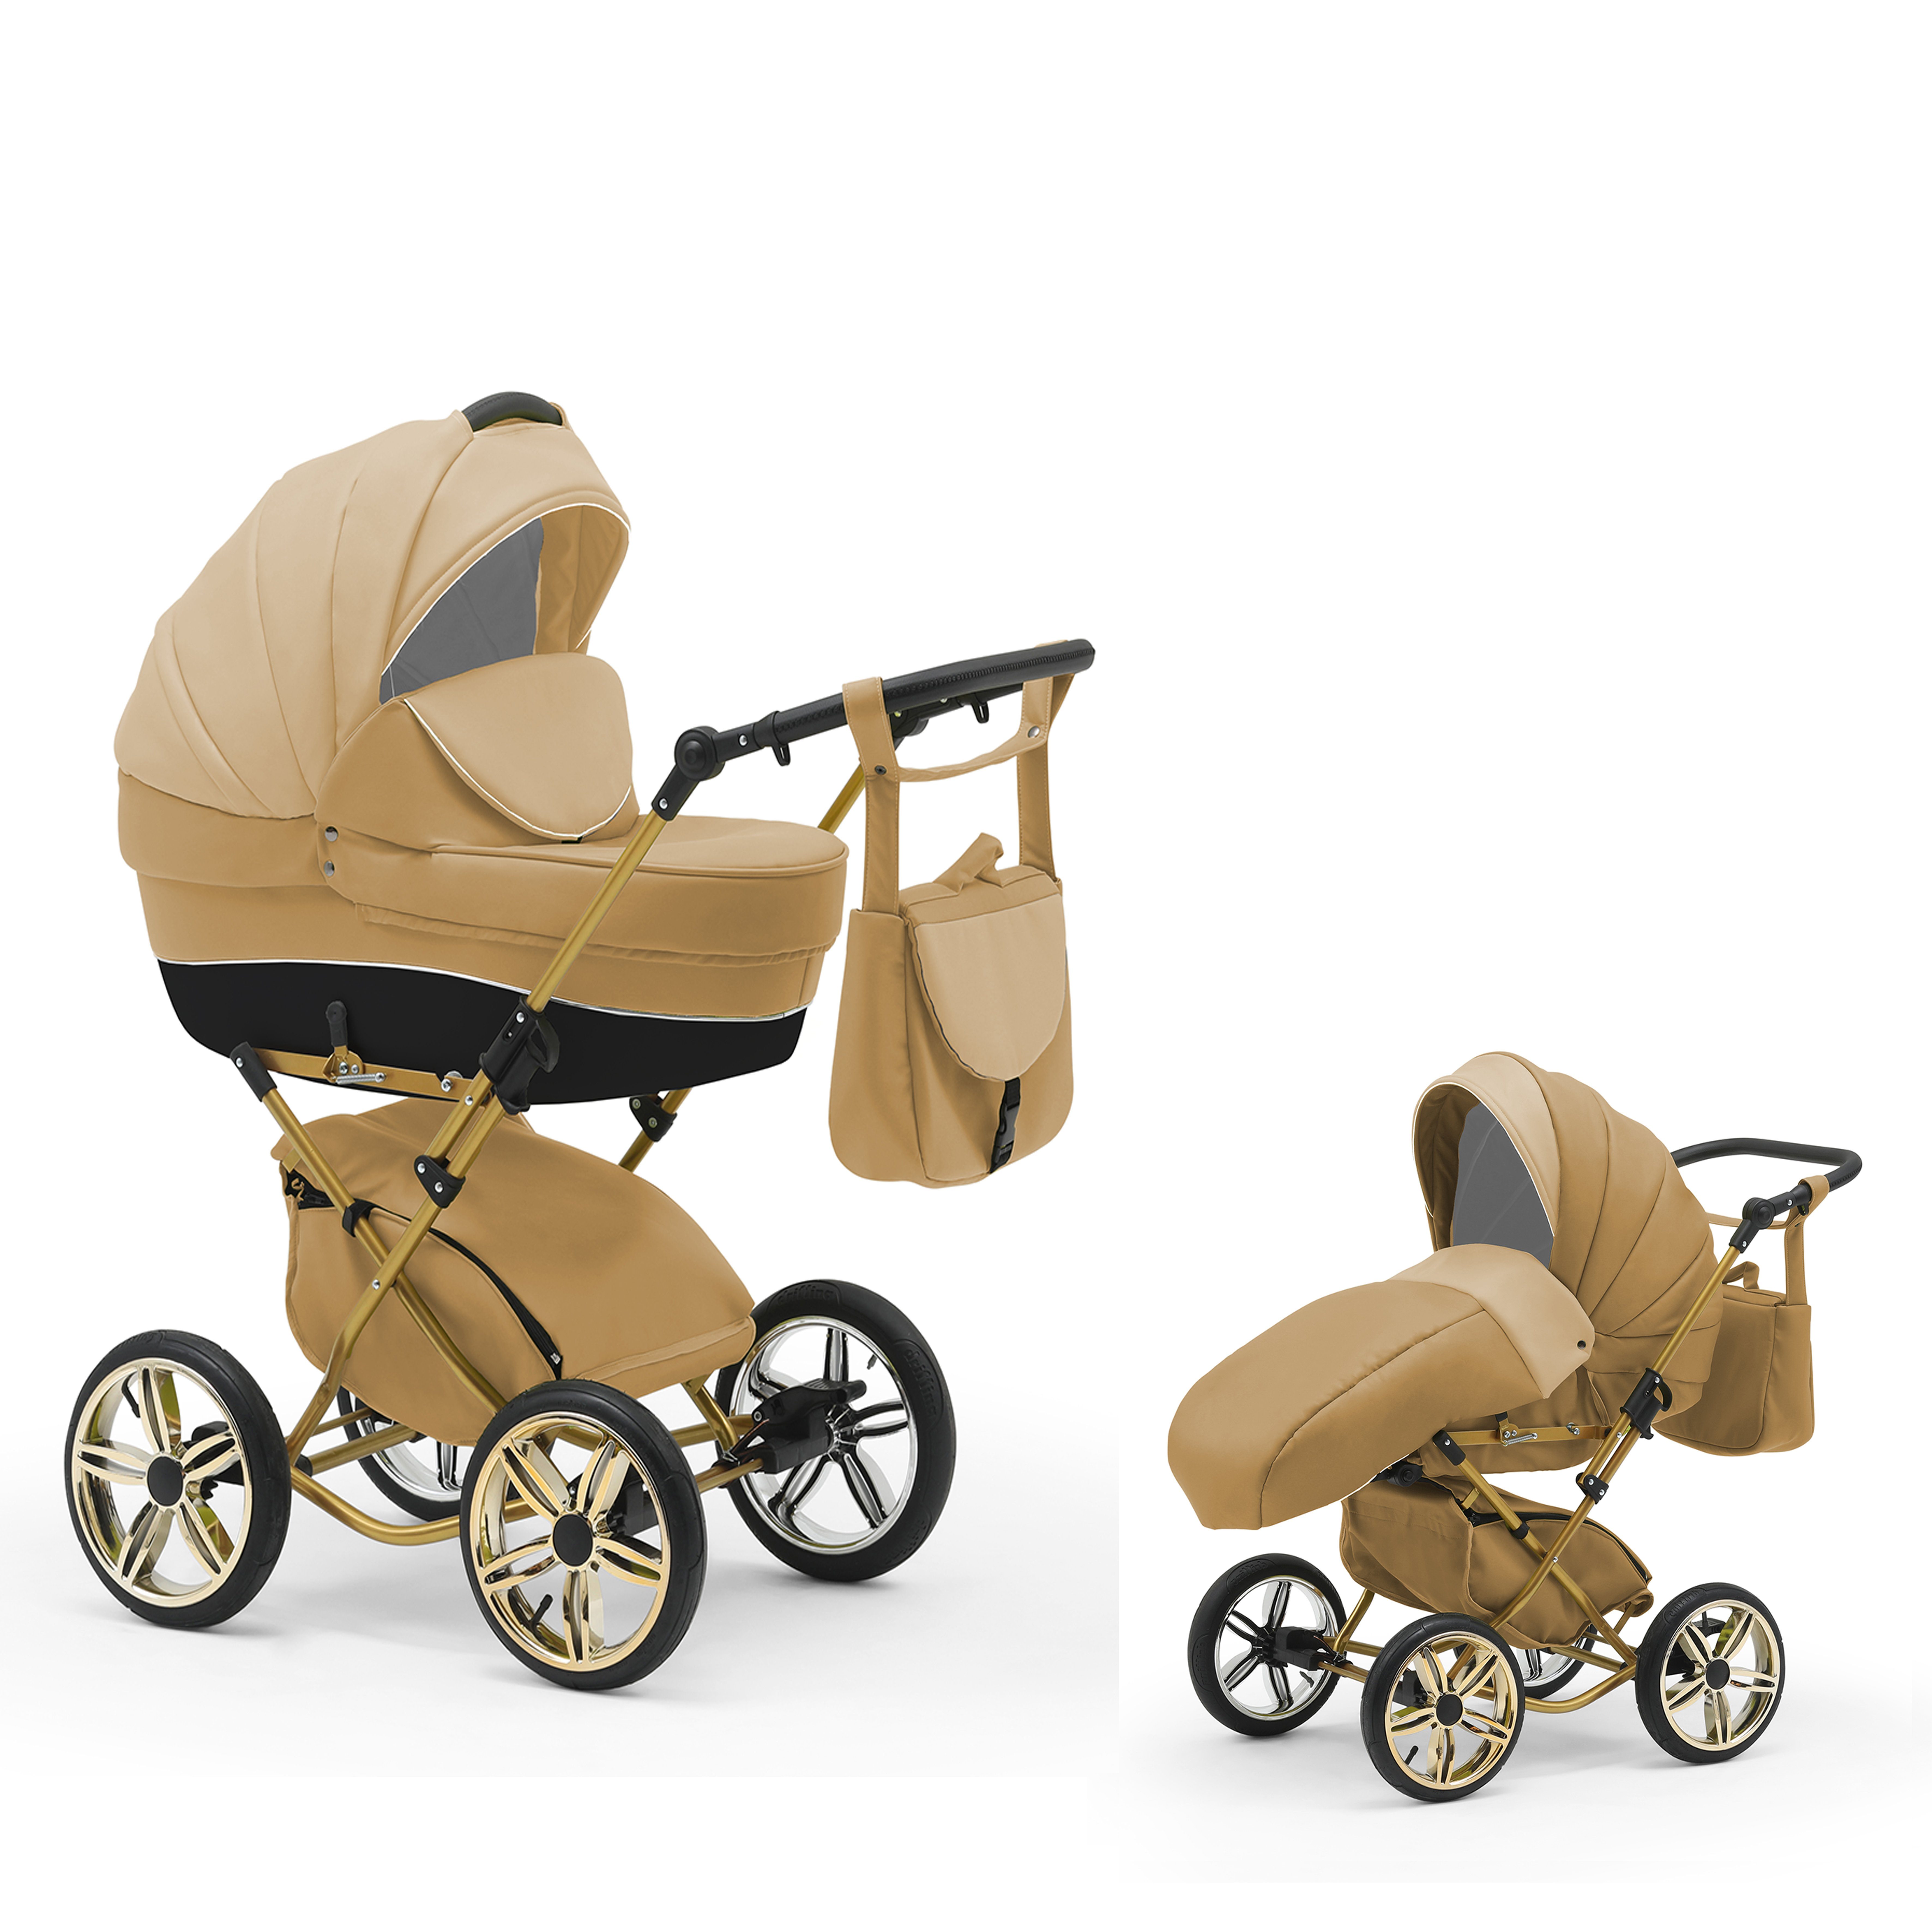 Beige-Dunkelbeige Designs Kombi-Kinderwagen 1 11 in babies-on-wheels - Sorento in 4 Geburt 2 Jahre - 30 von Teile bis